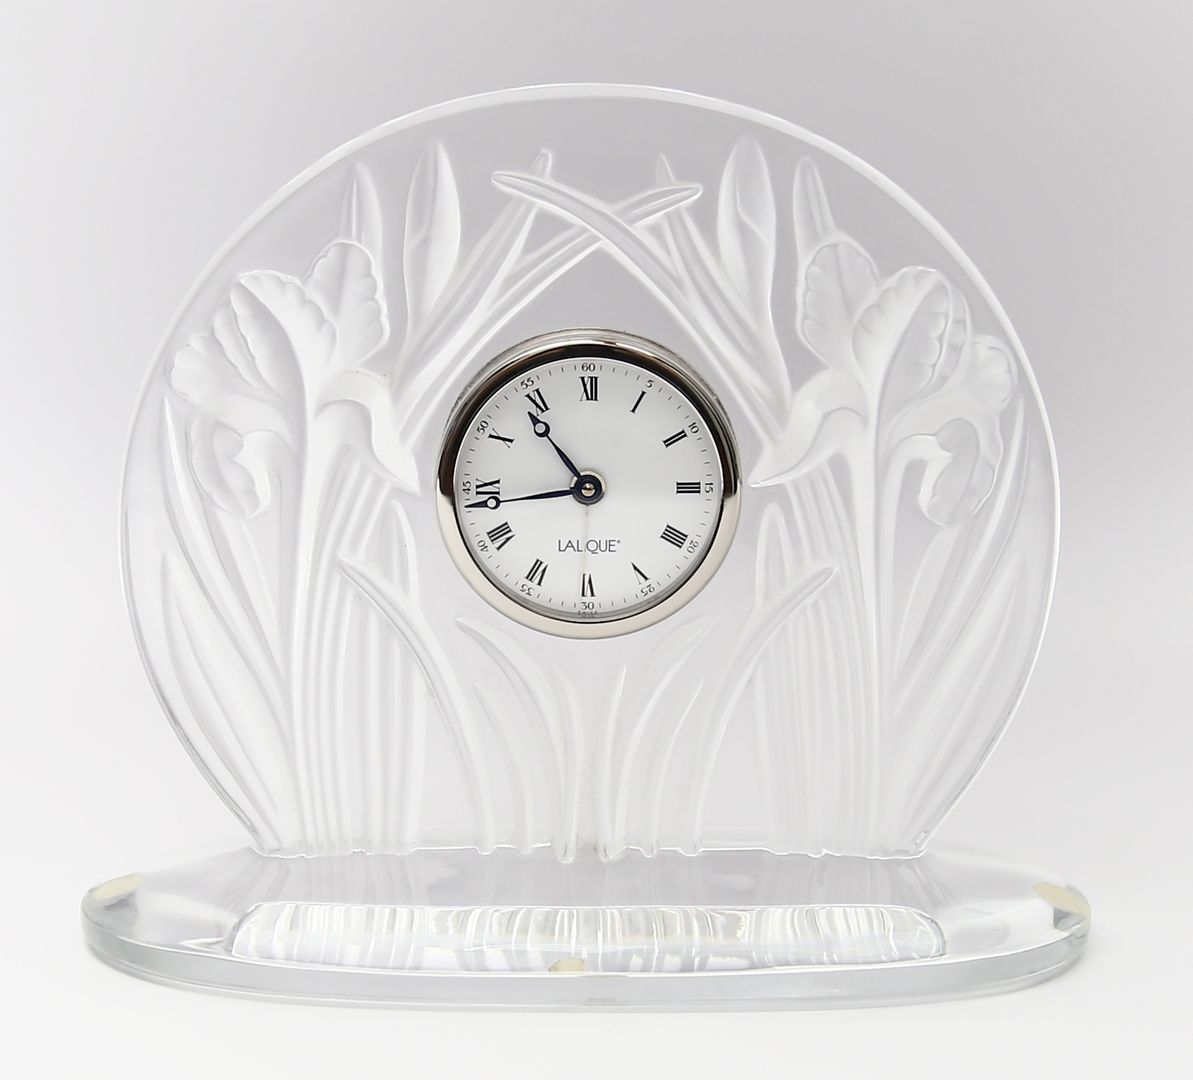 Tischwecker "Lalique".